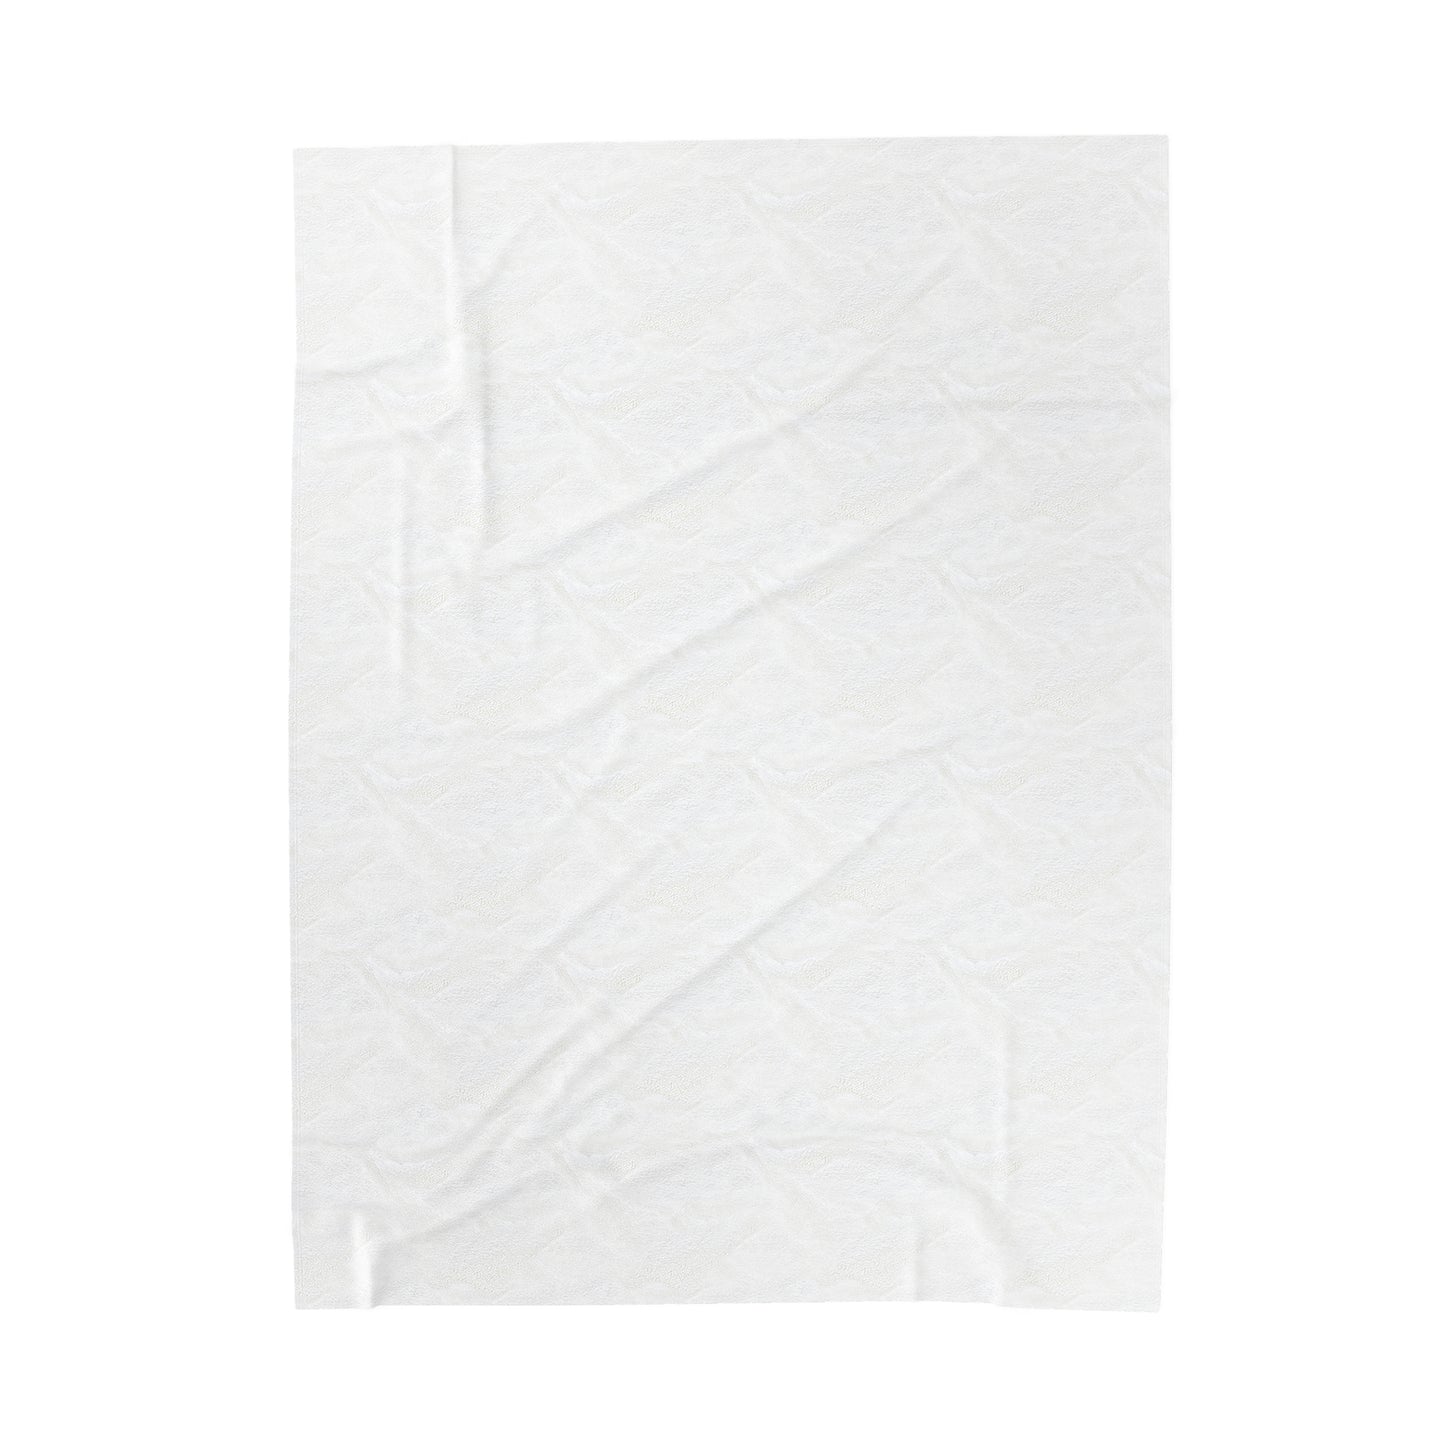 My Daughter| Velveteen Plush Blanket | 60" x 80"